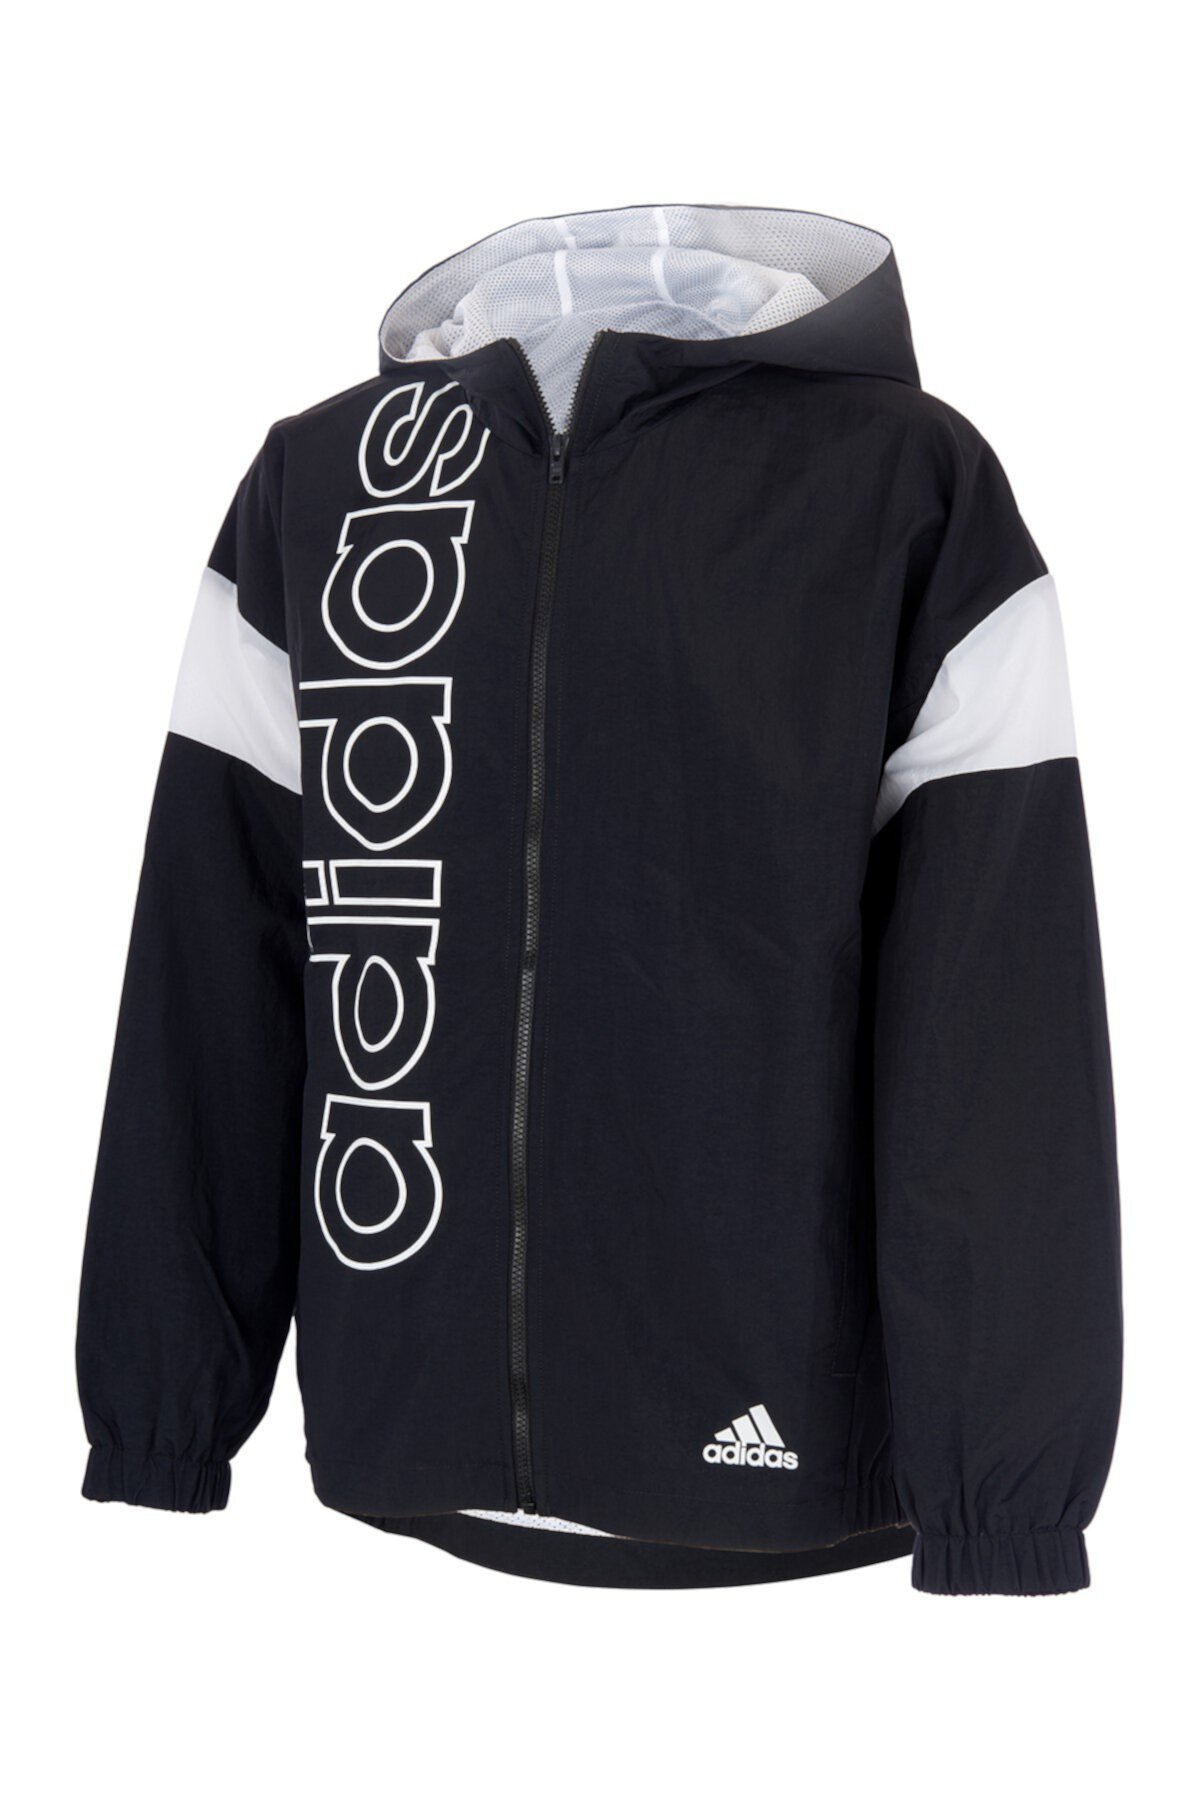 Тканая куртка с капюшоном и молнией спереди (для больших мальчиков) Adidas